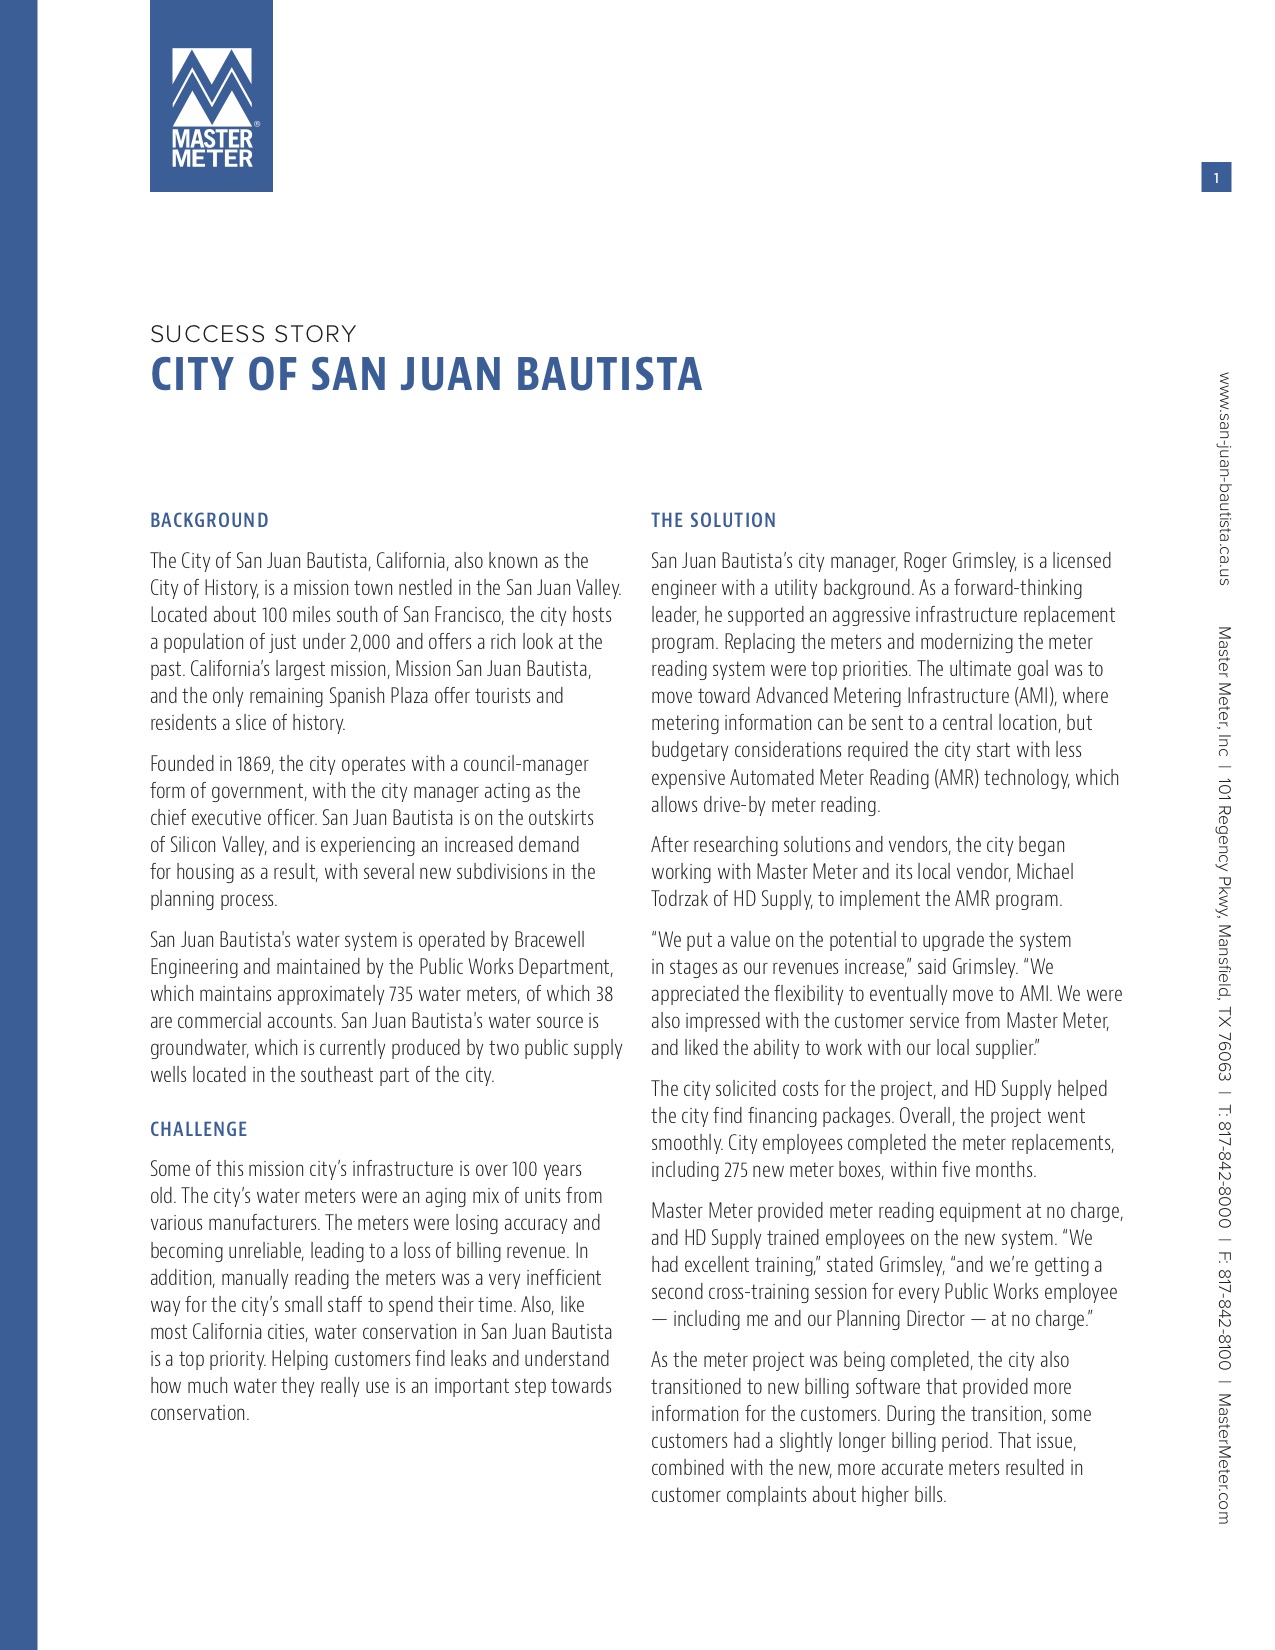 City of San Juan Bautista